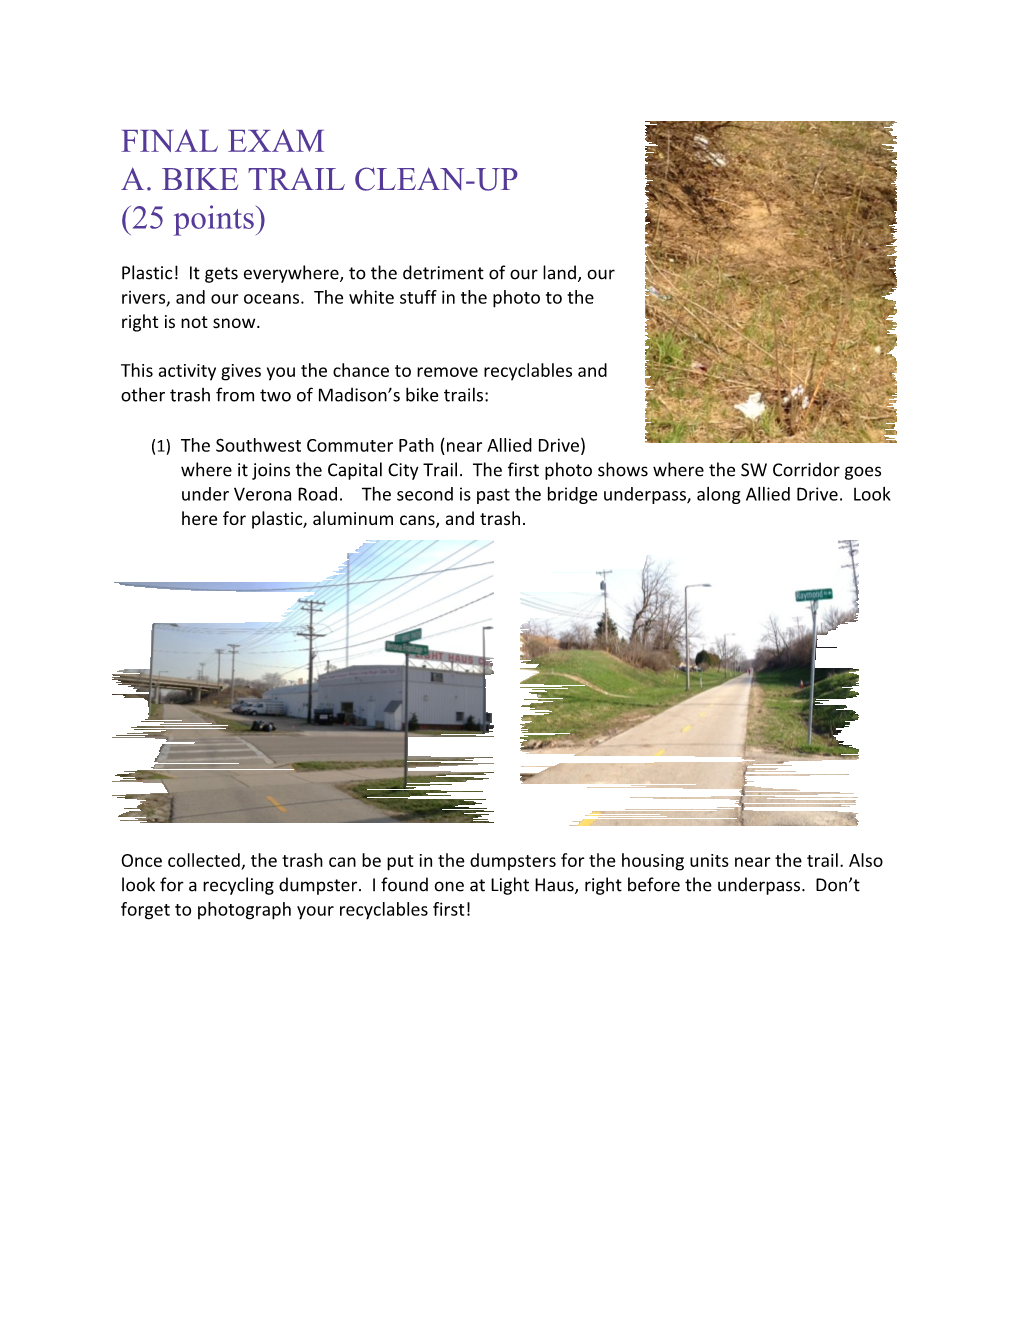 A. Bike Trail Clean-Up